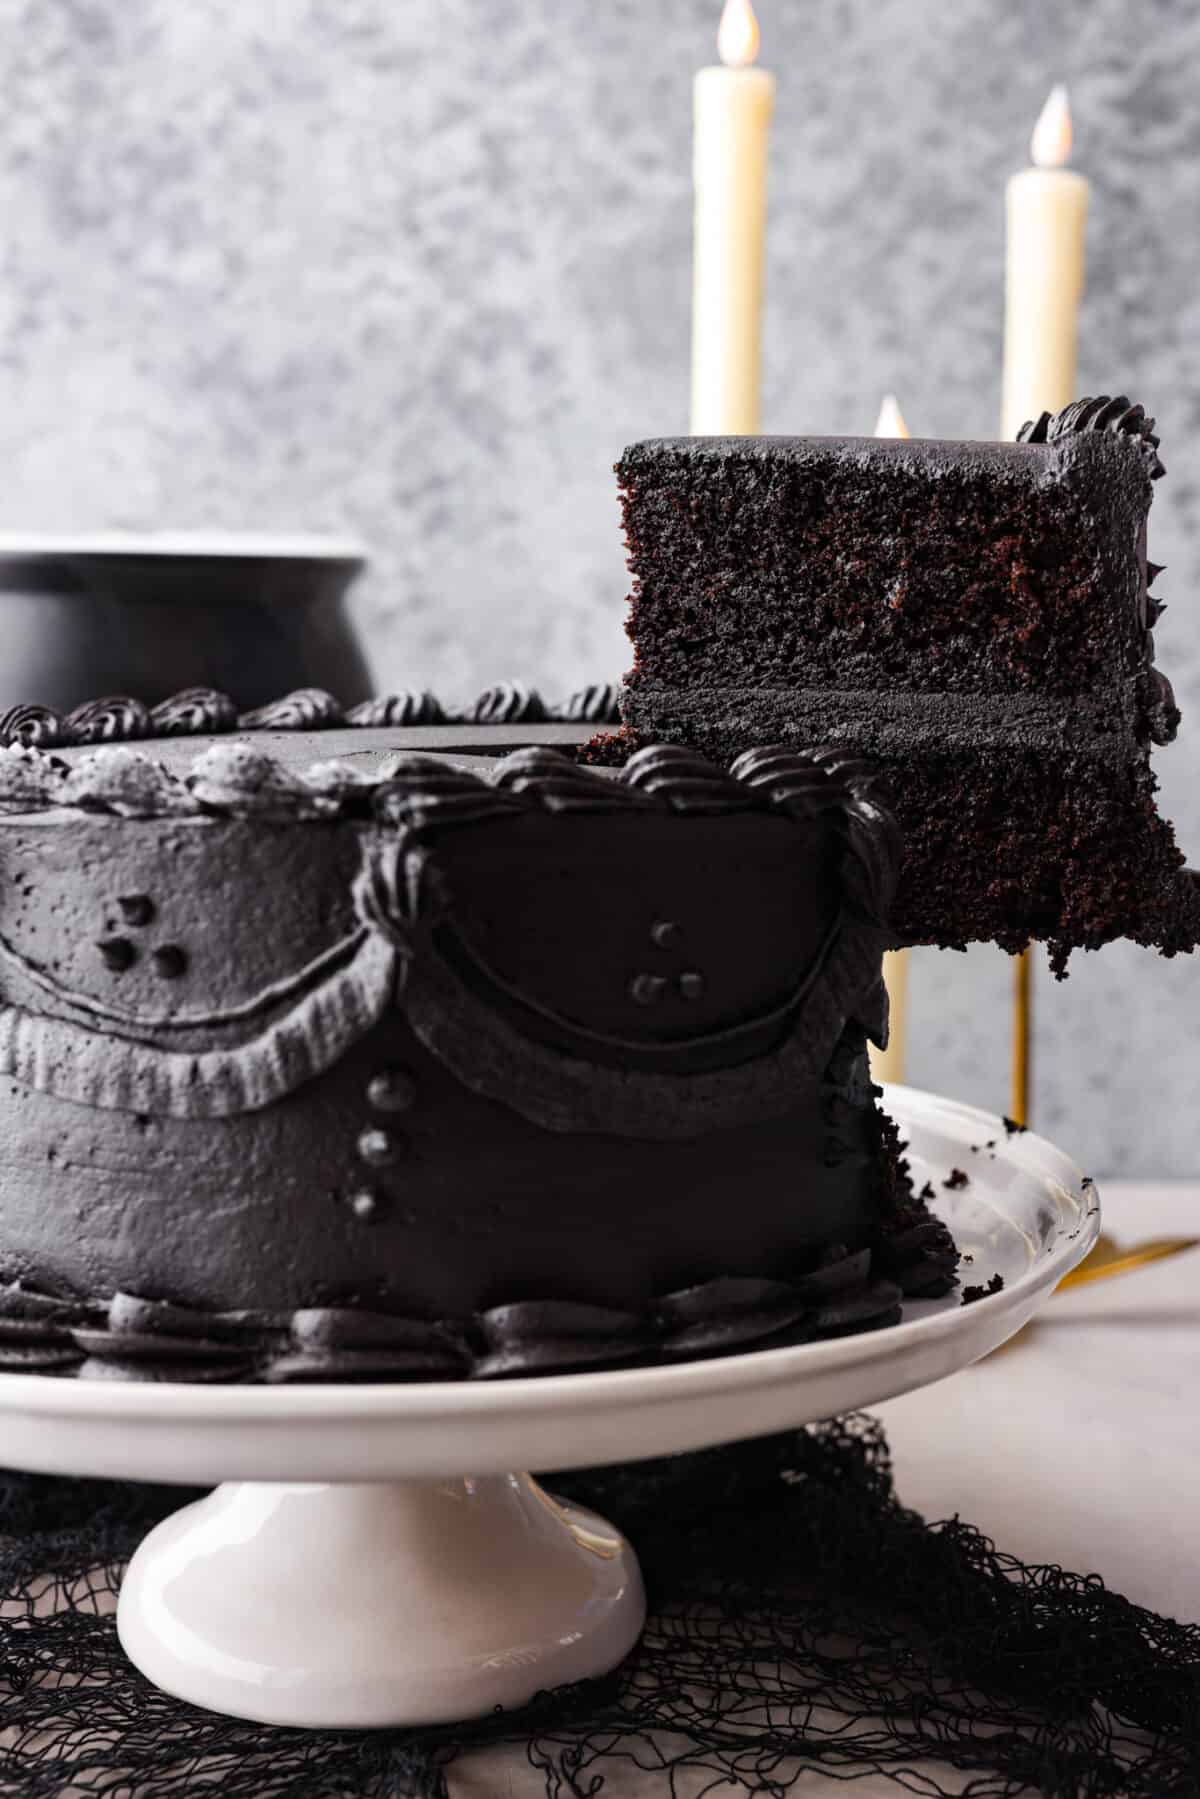 Serving a slice of black velvet cake.